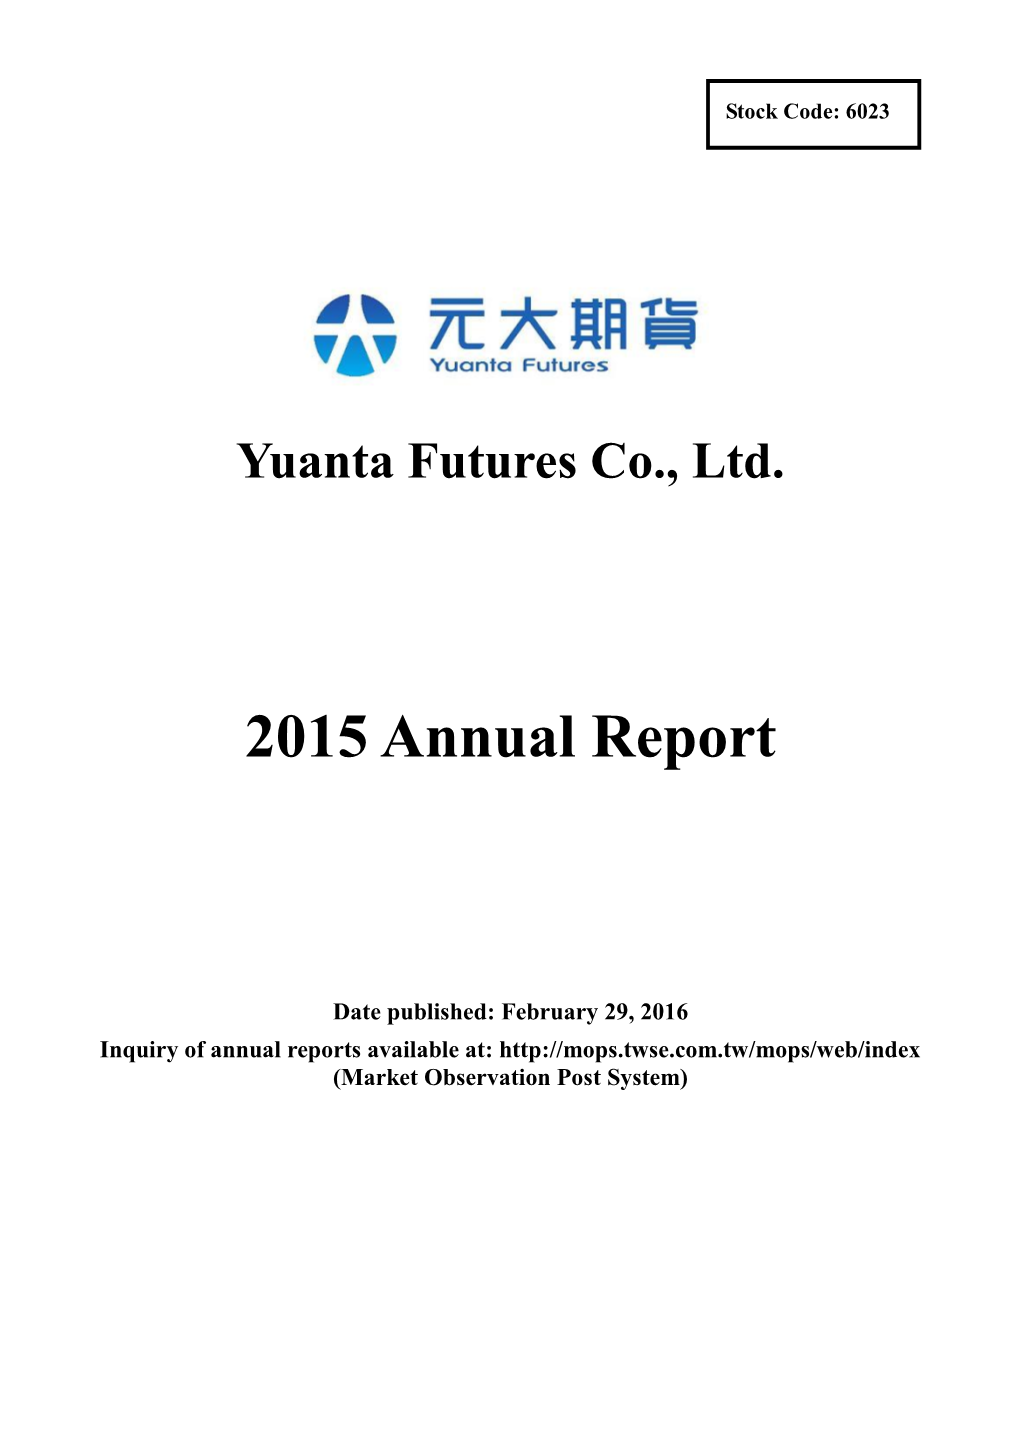 Yuanta Futures Co., Ltd. 2015 Annual Report